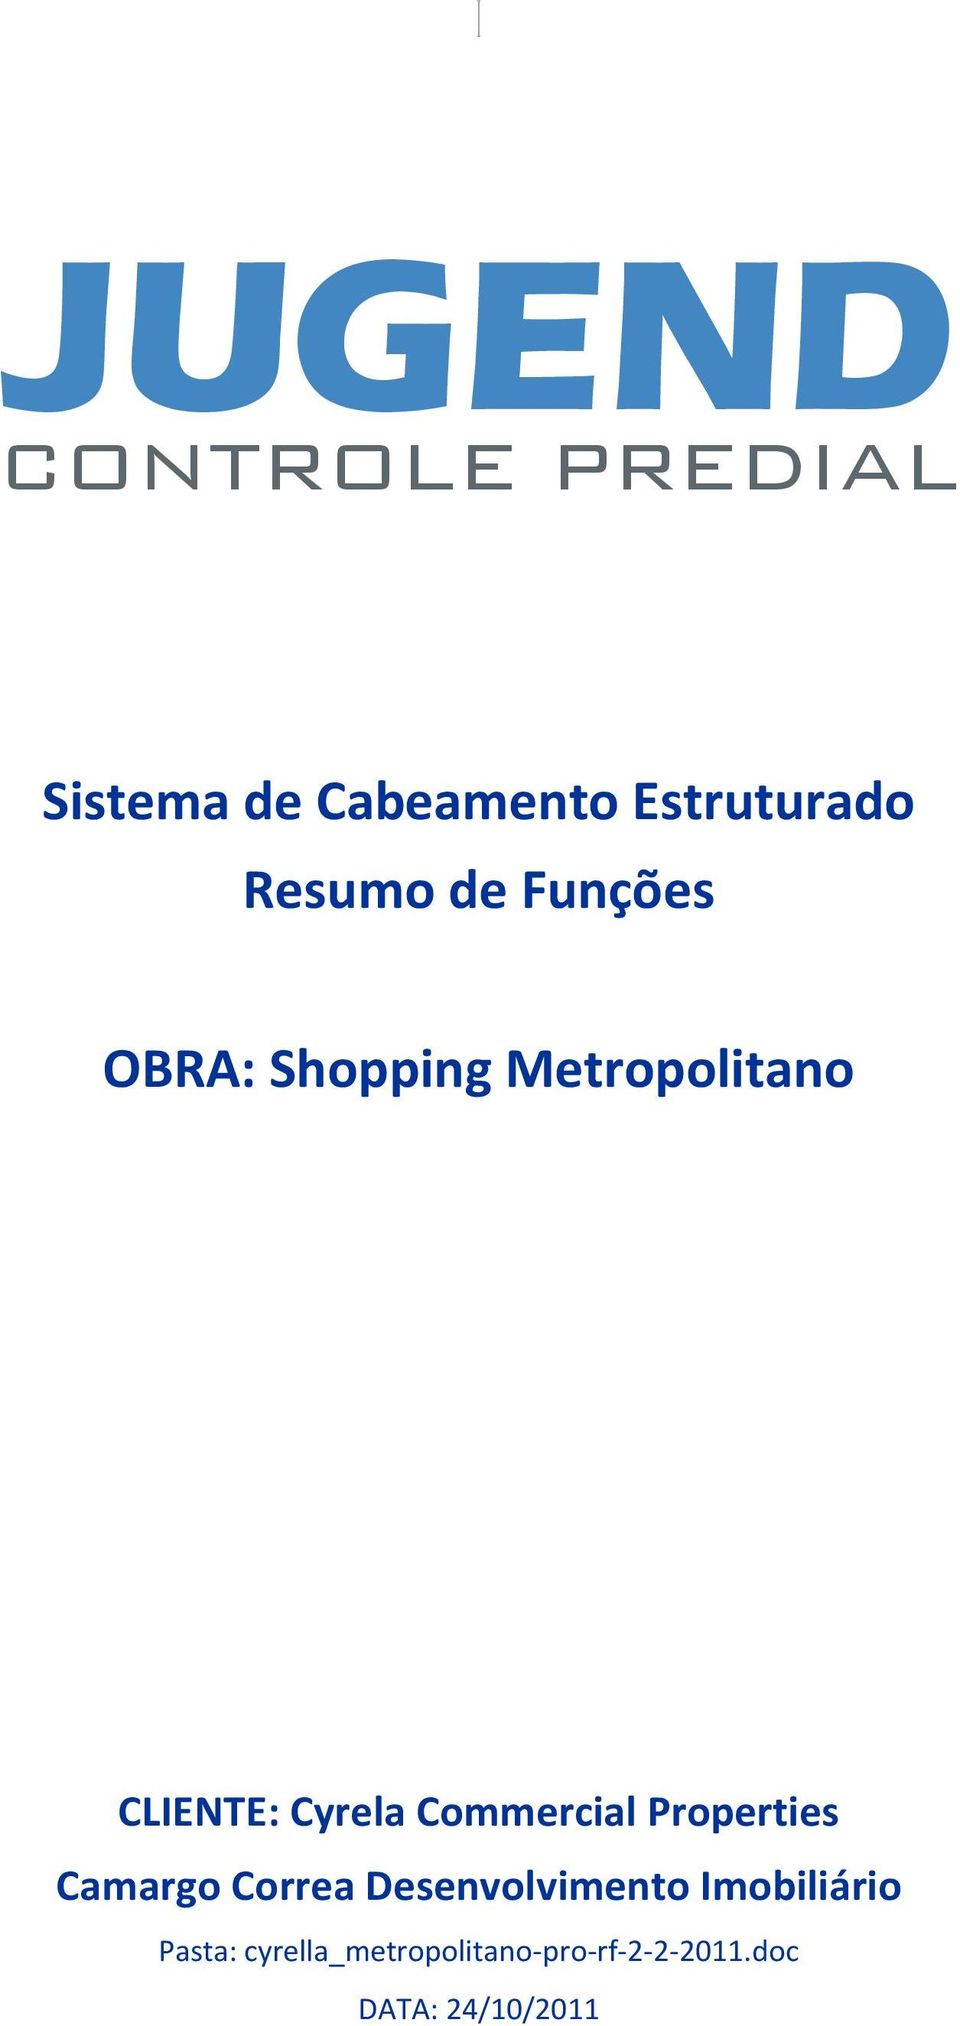 Properties Camargo Correa Desenvolvimento